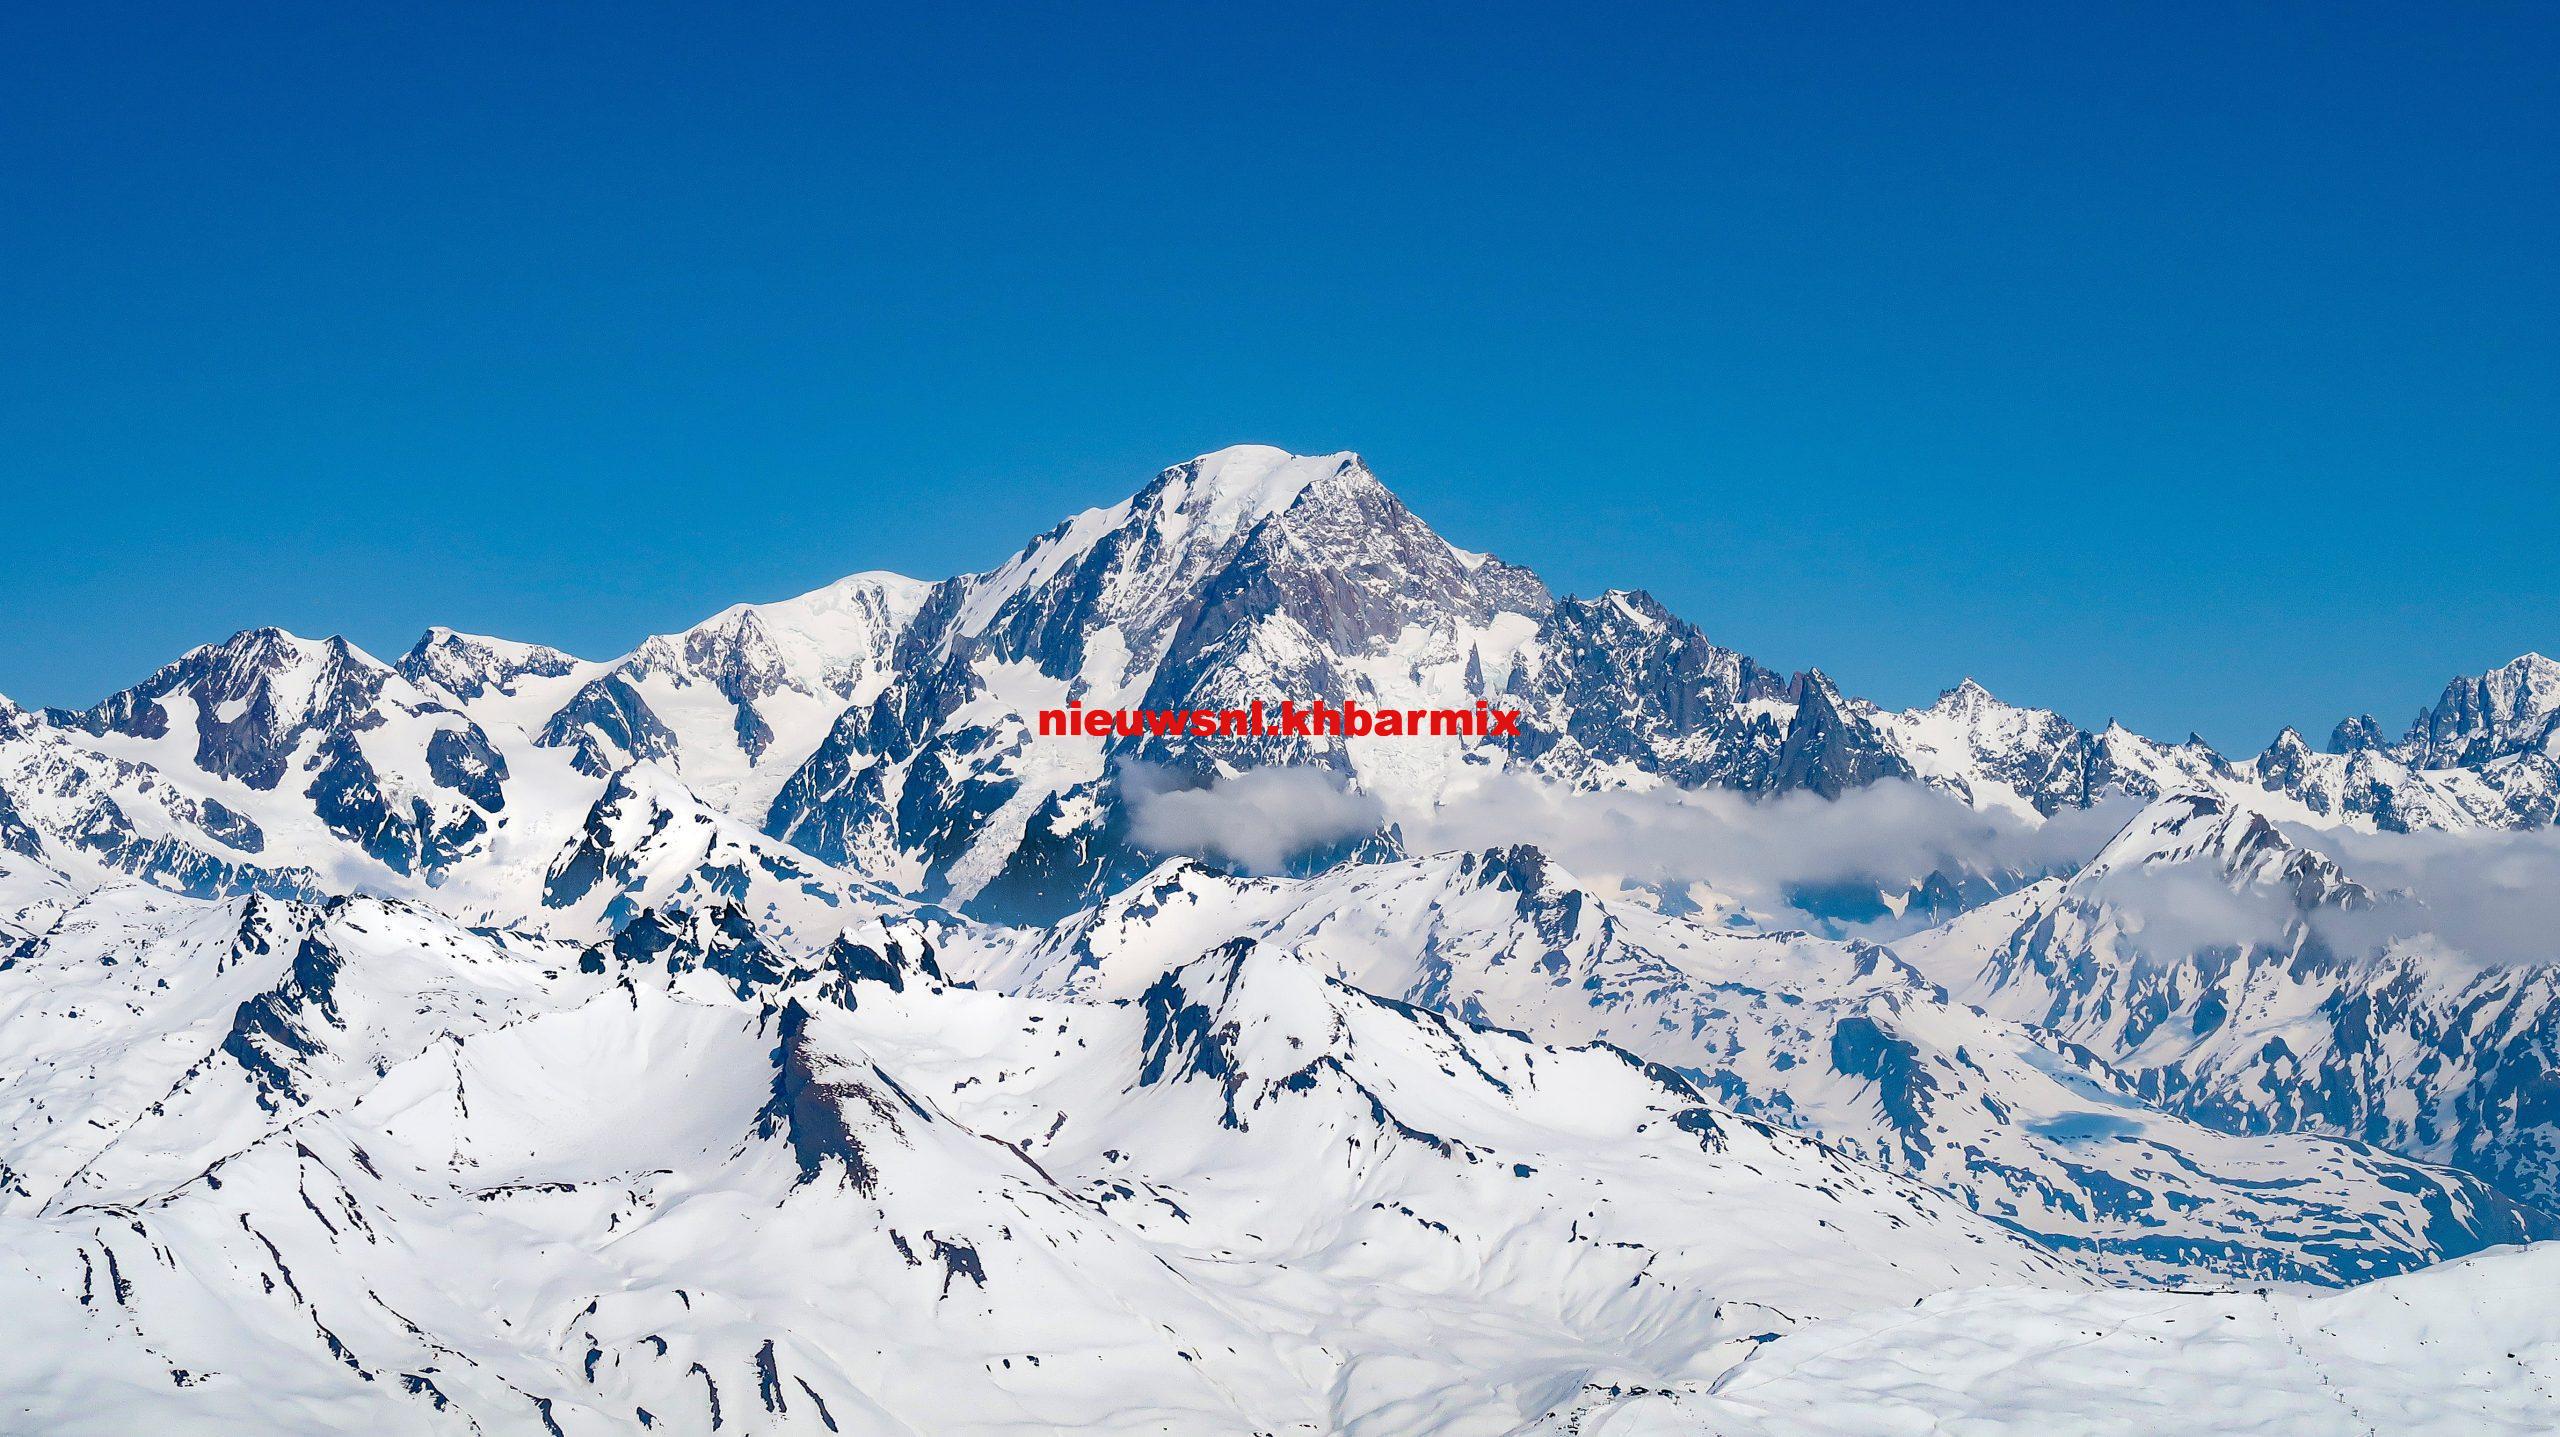 Hoe heet de hoogste berg van de Alpen 9 letters?